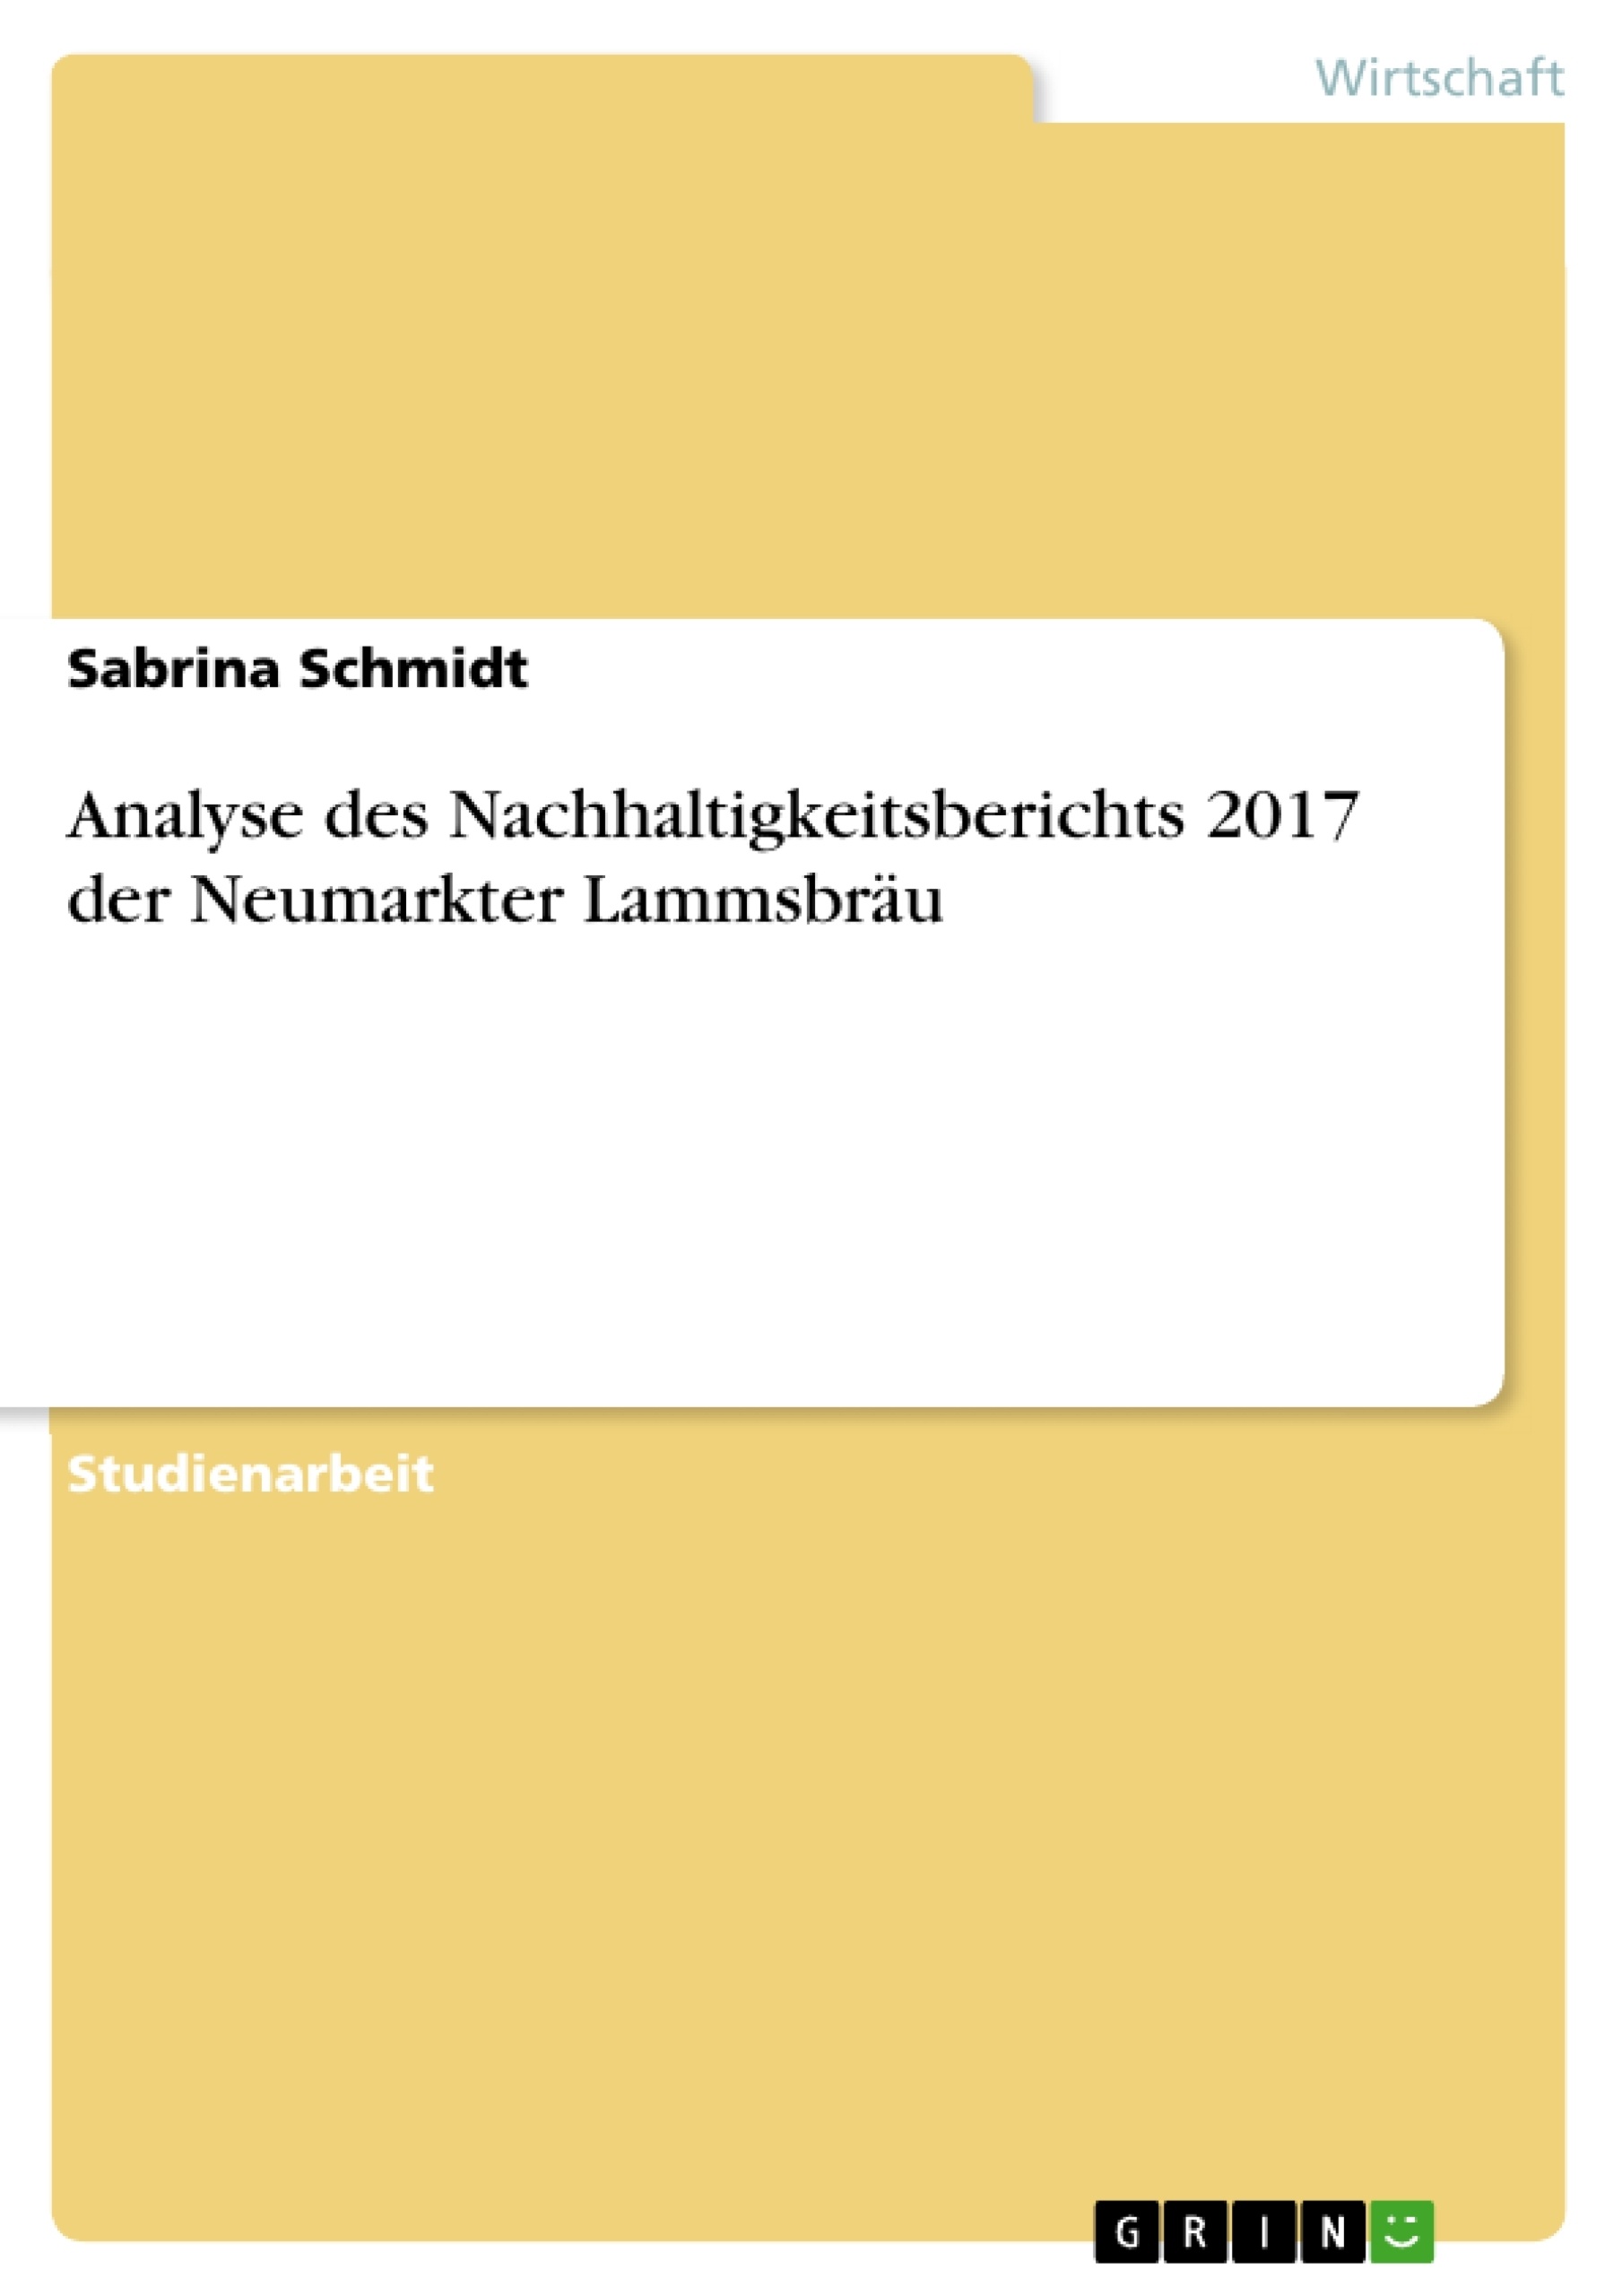 Titel: Analyse des Nachhaltigkeitsberichts 2017 der Neumarkter Lammsbräu